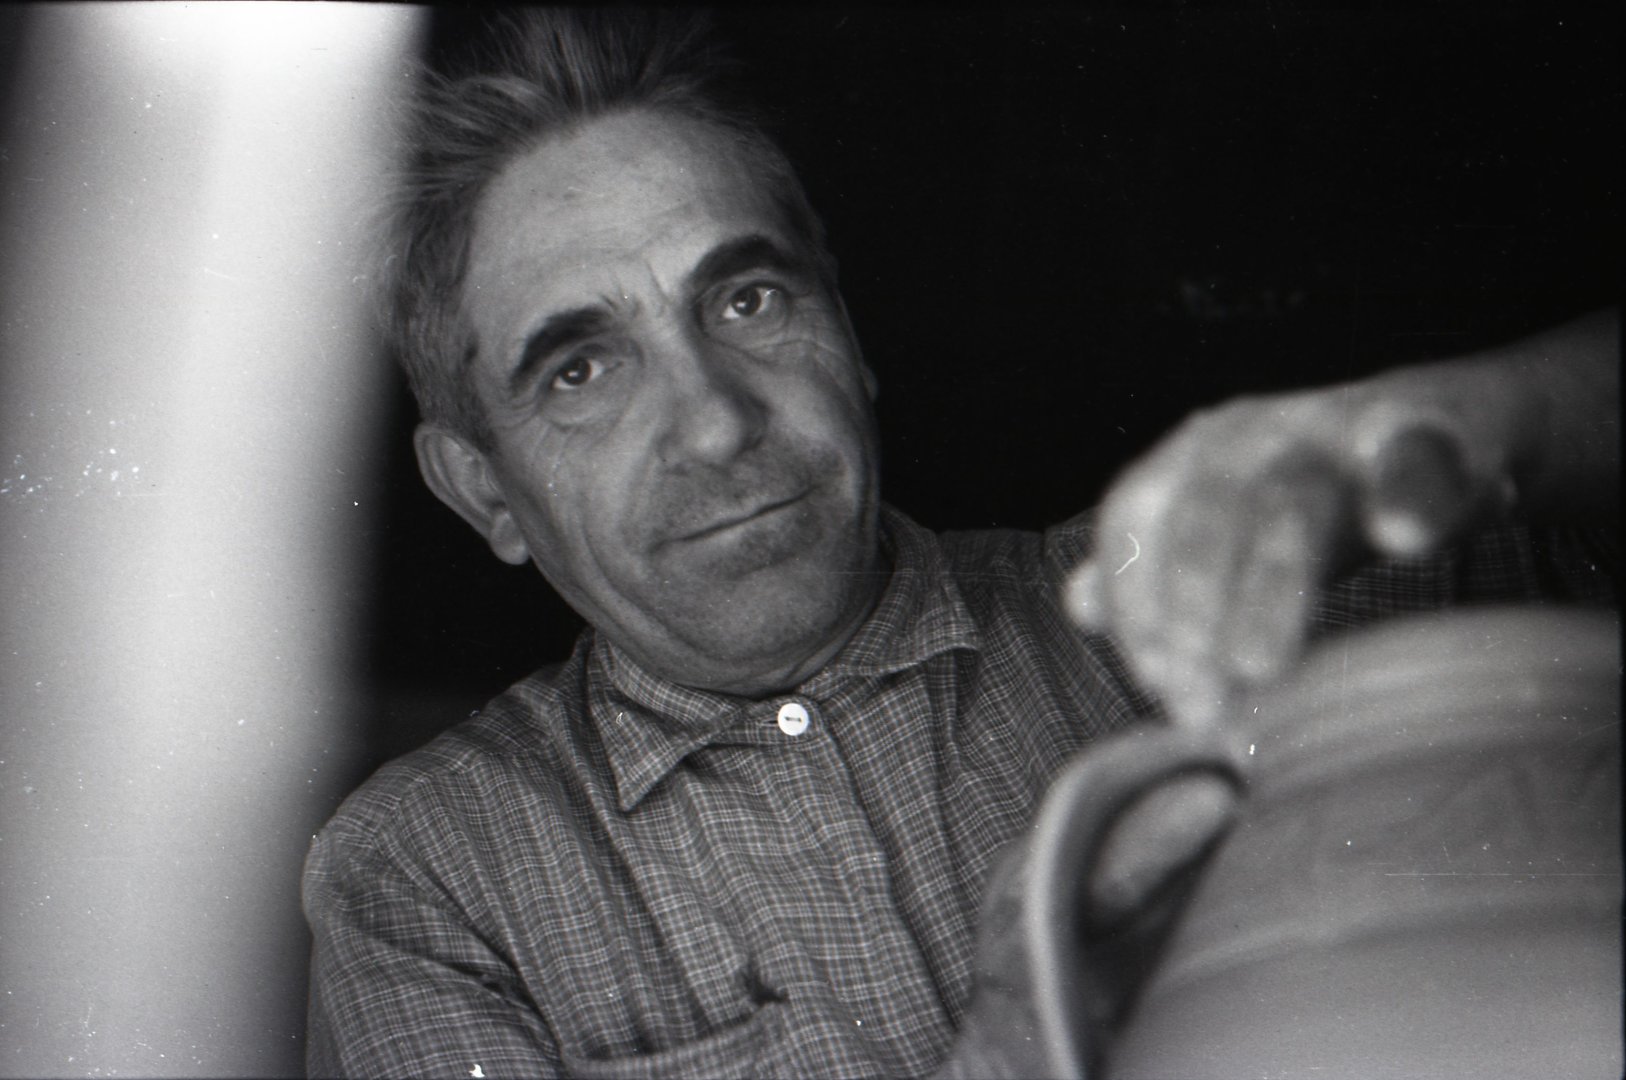 Bartus Mihály gorzafalvi fazekasműhelyében fazekat fülez (1978 Gorzafalva, Románia)